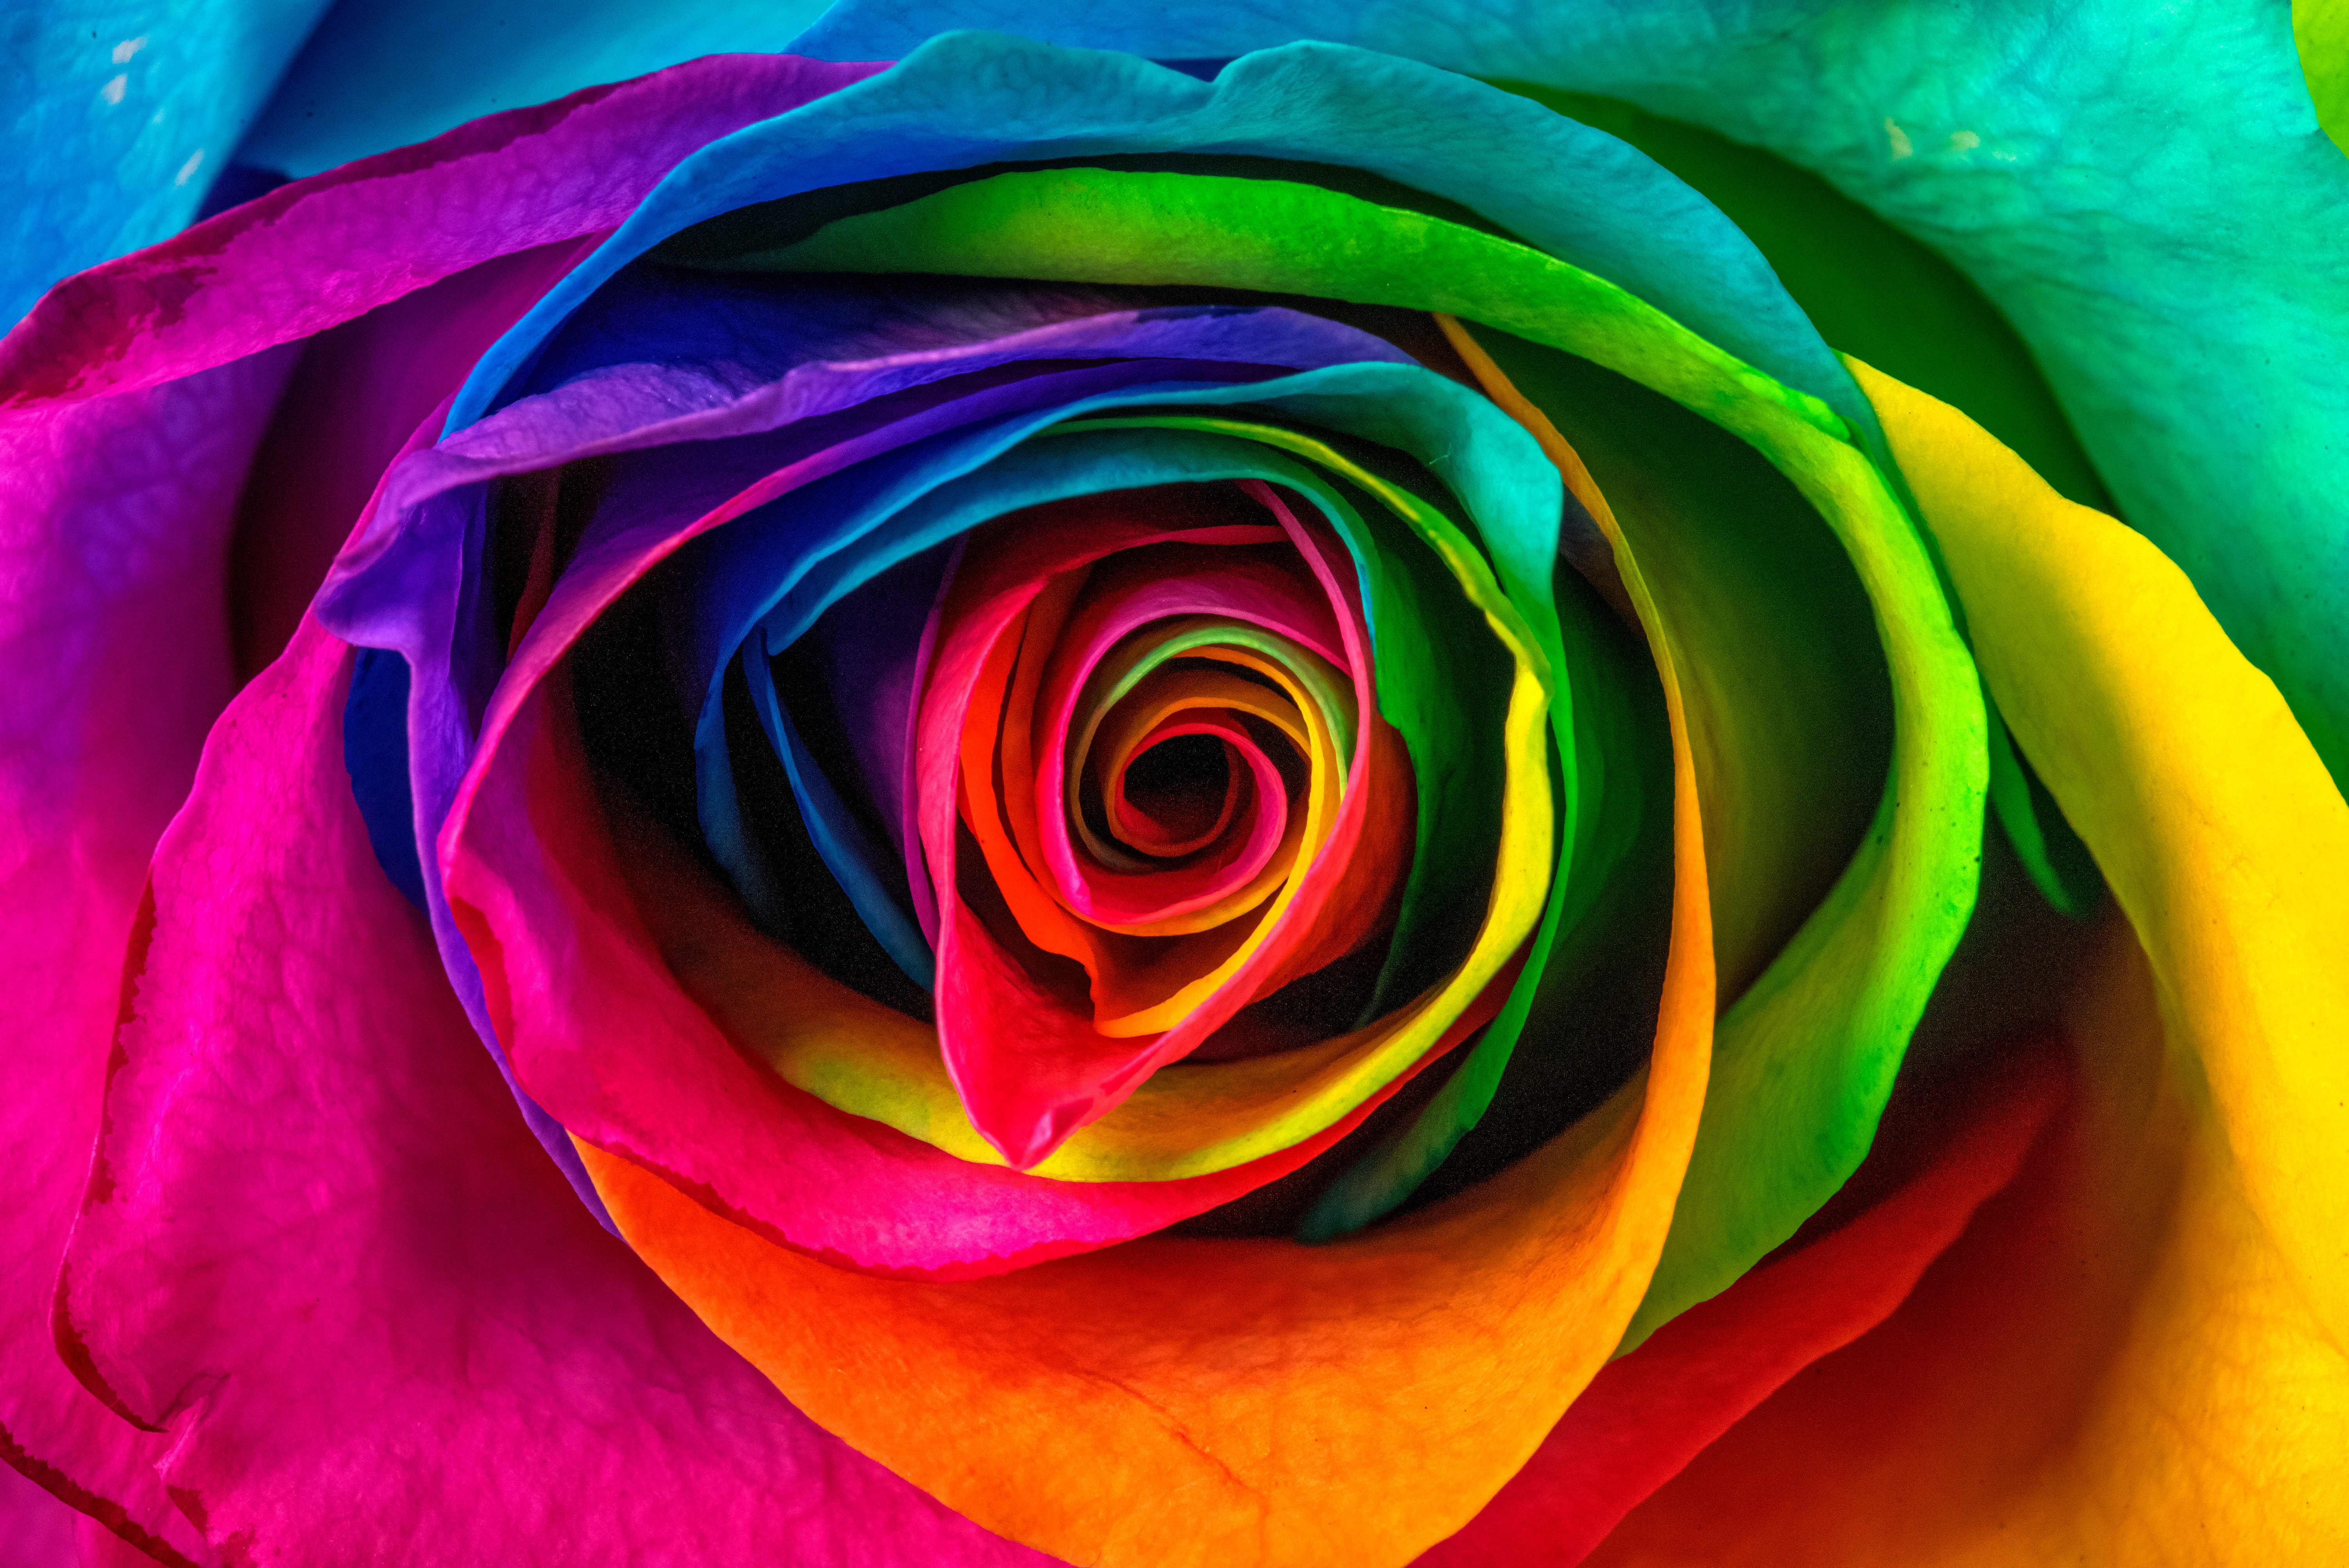 Best Rose Desktop Images